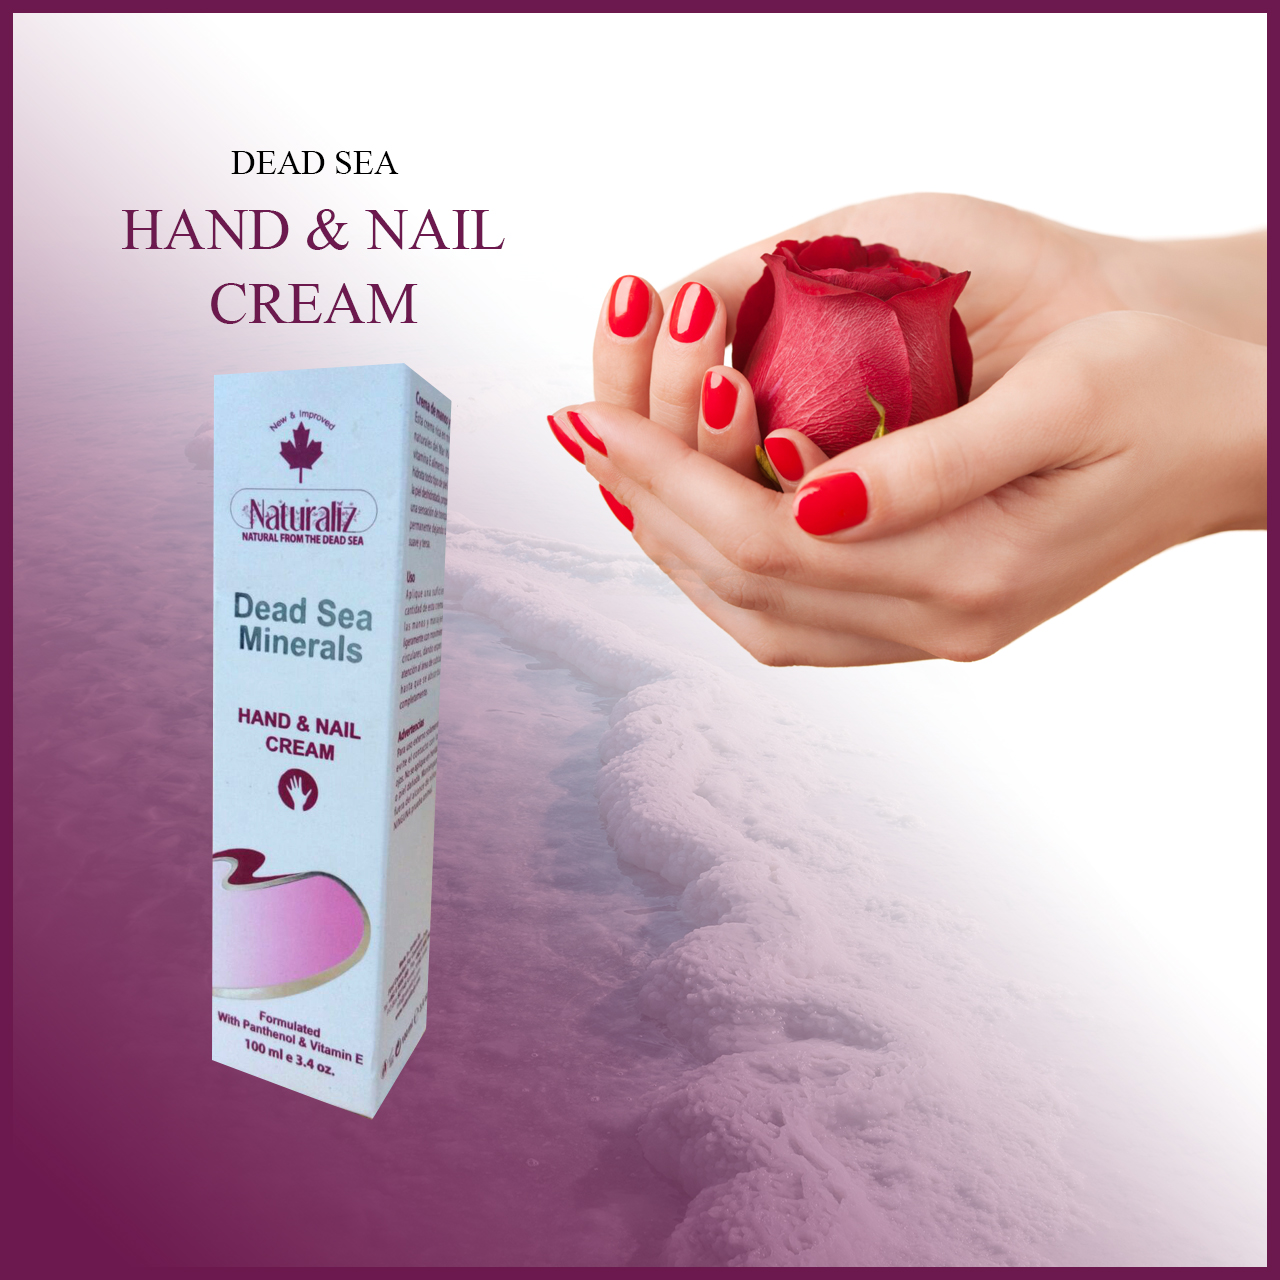 Hand & Nail Cream